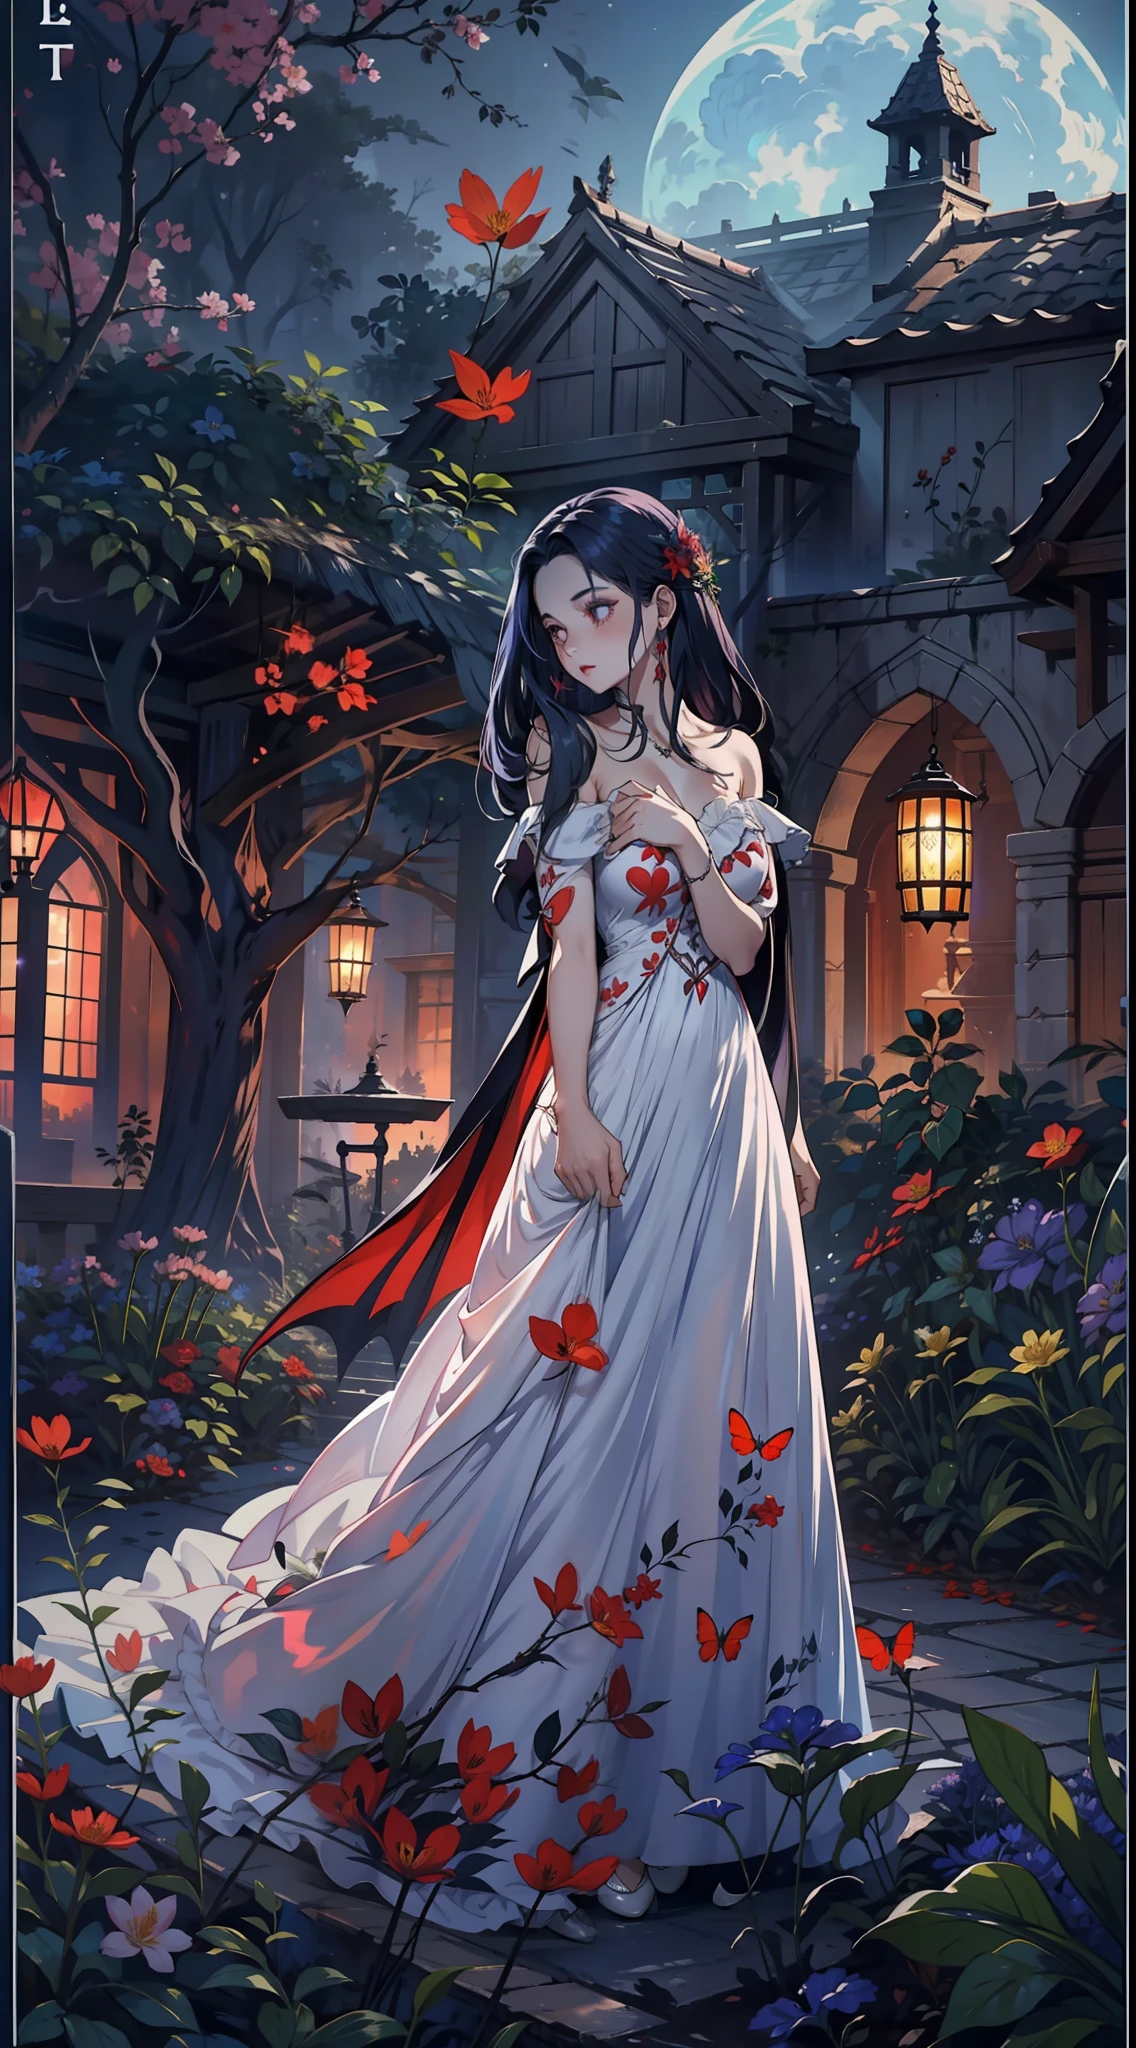 봄 파티에서, 아름다운 뱀파이어가 맑은 밤에 정원을 걷는다. 그녀는 머리에 꽃 화환을 쓰고 있습니다., 눈이 차갑고 피부에 색소가 부족합니다., 그녀는 긴 옷을 입는다., 하트 네크라인이 있는 수수한 드레스.